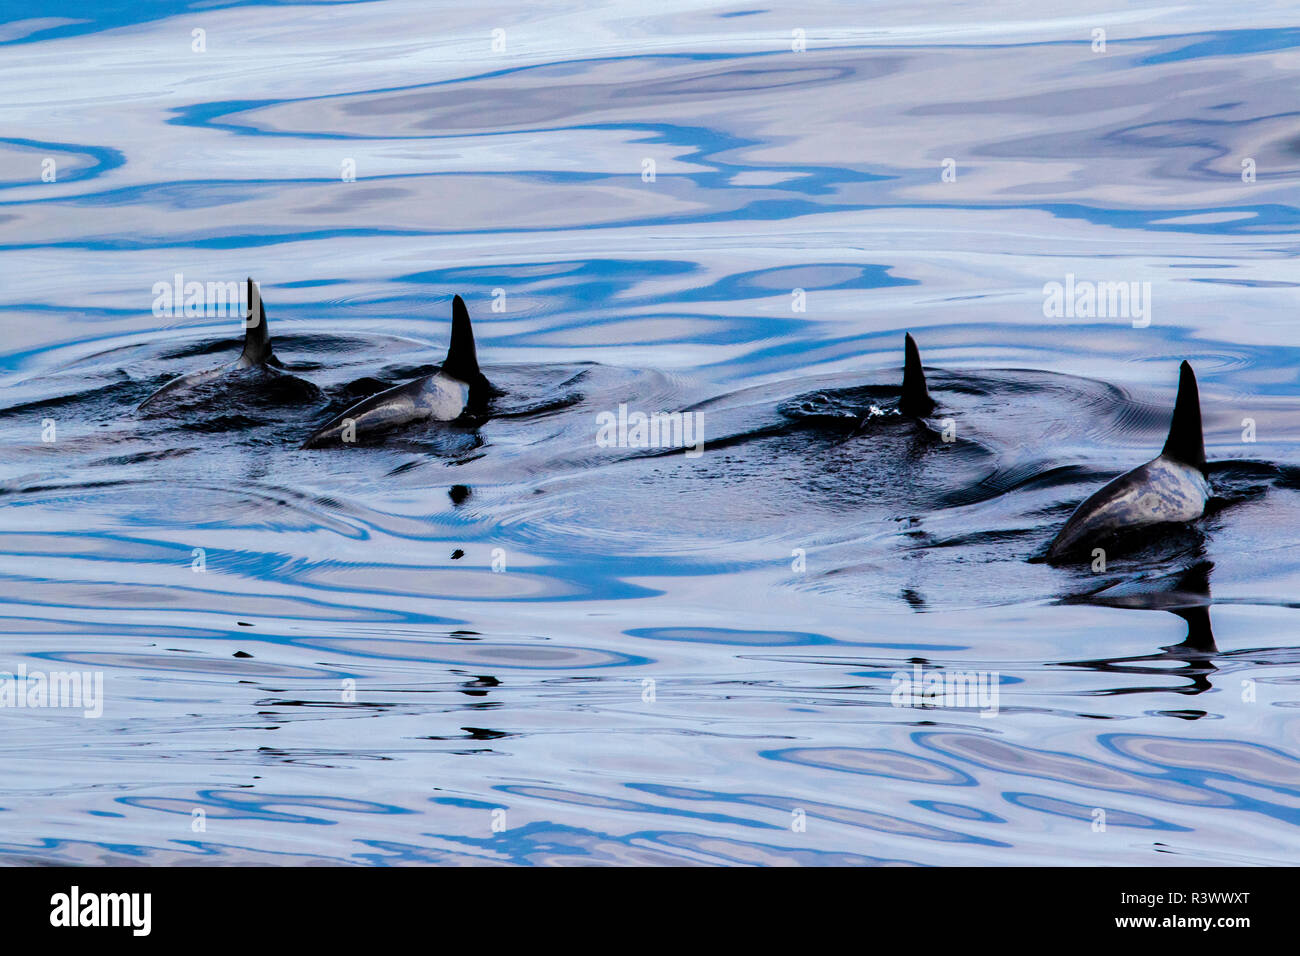 Rough-Toothed i delfini nuotare in formazione. Gorda banche, Baja California, Mare di Cortez, Messico. Foto Stock